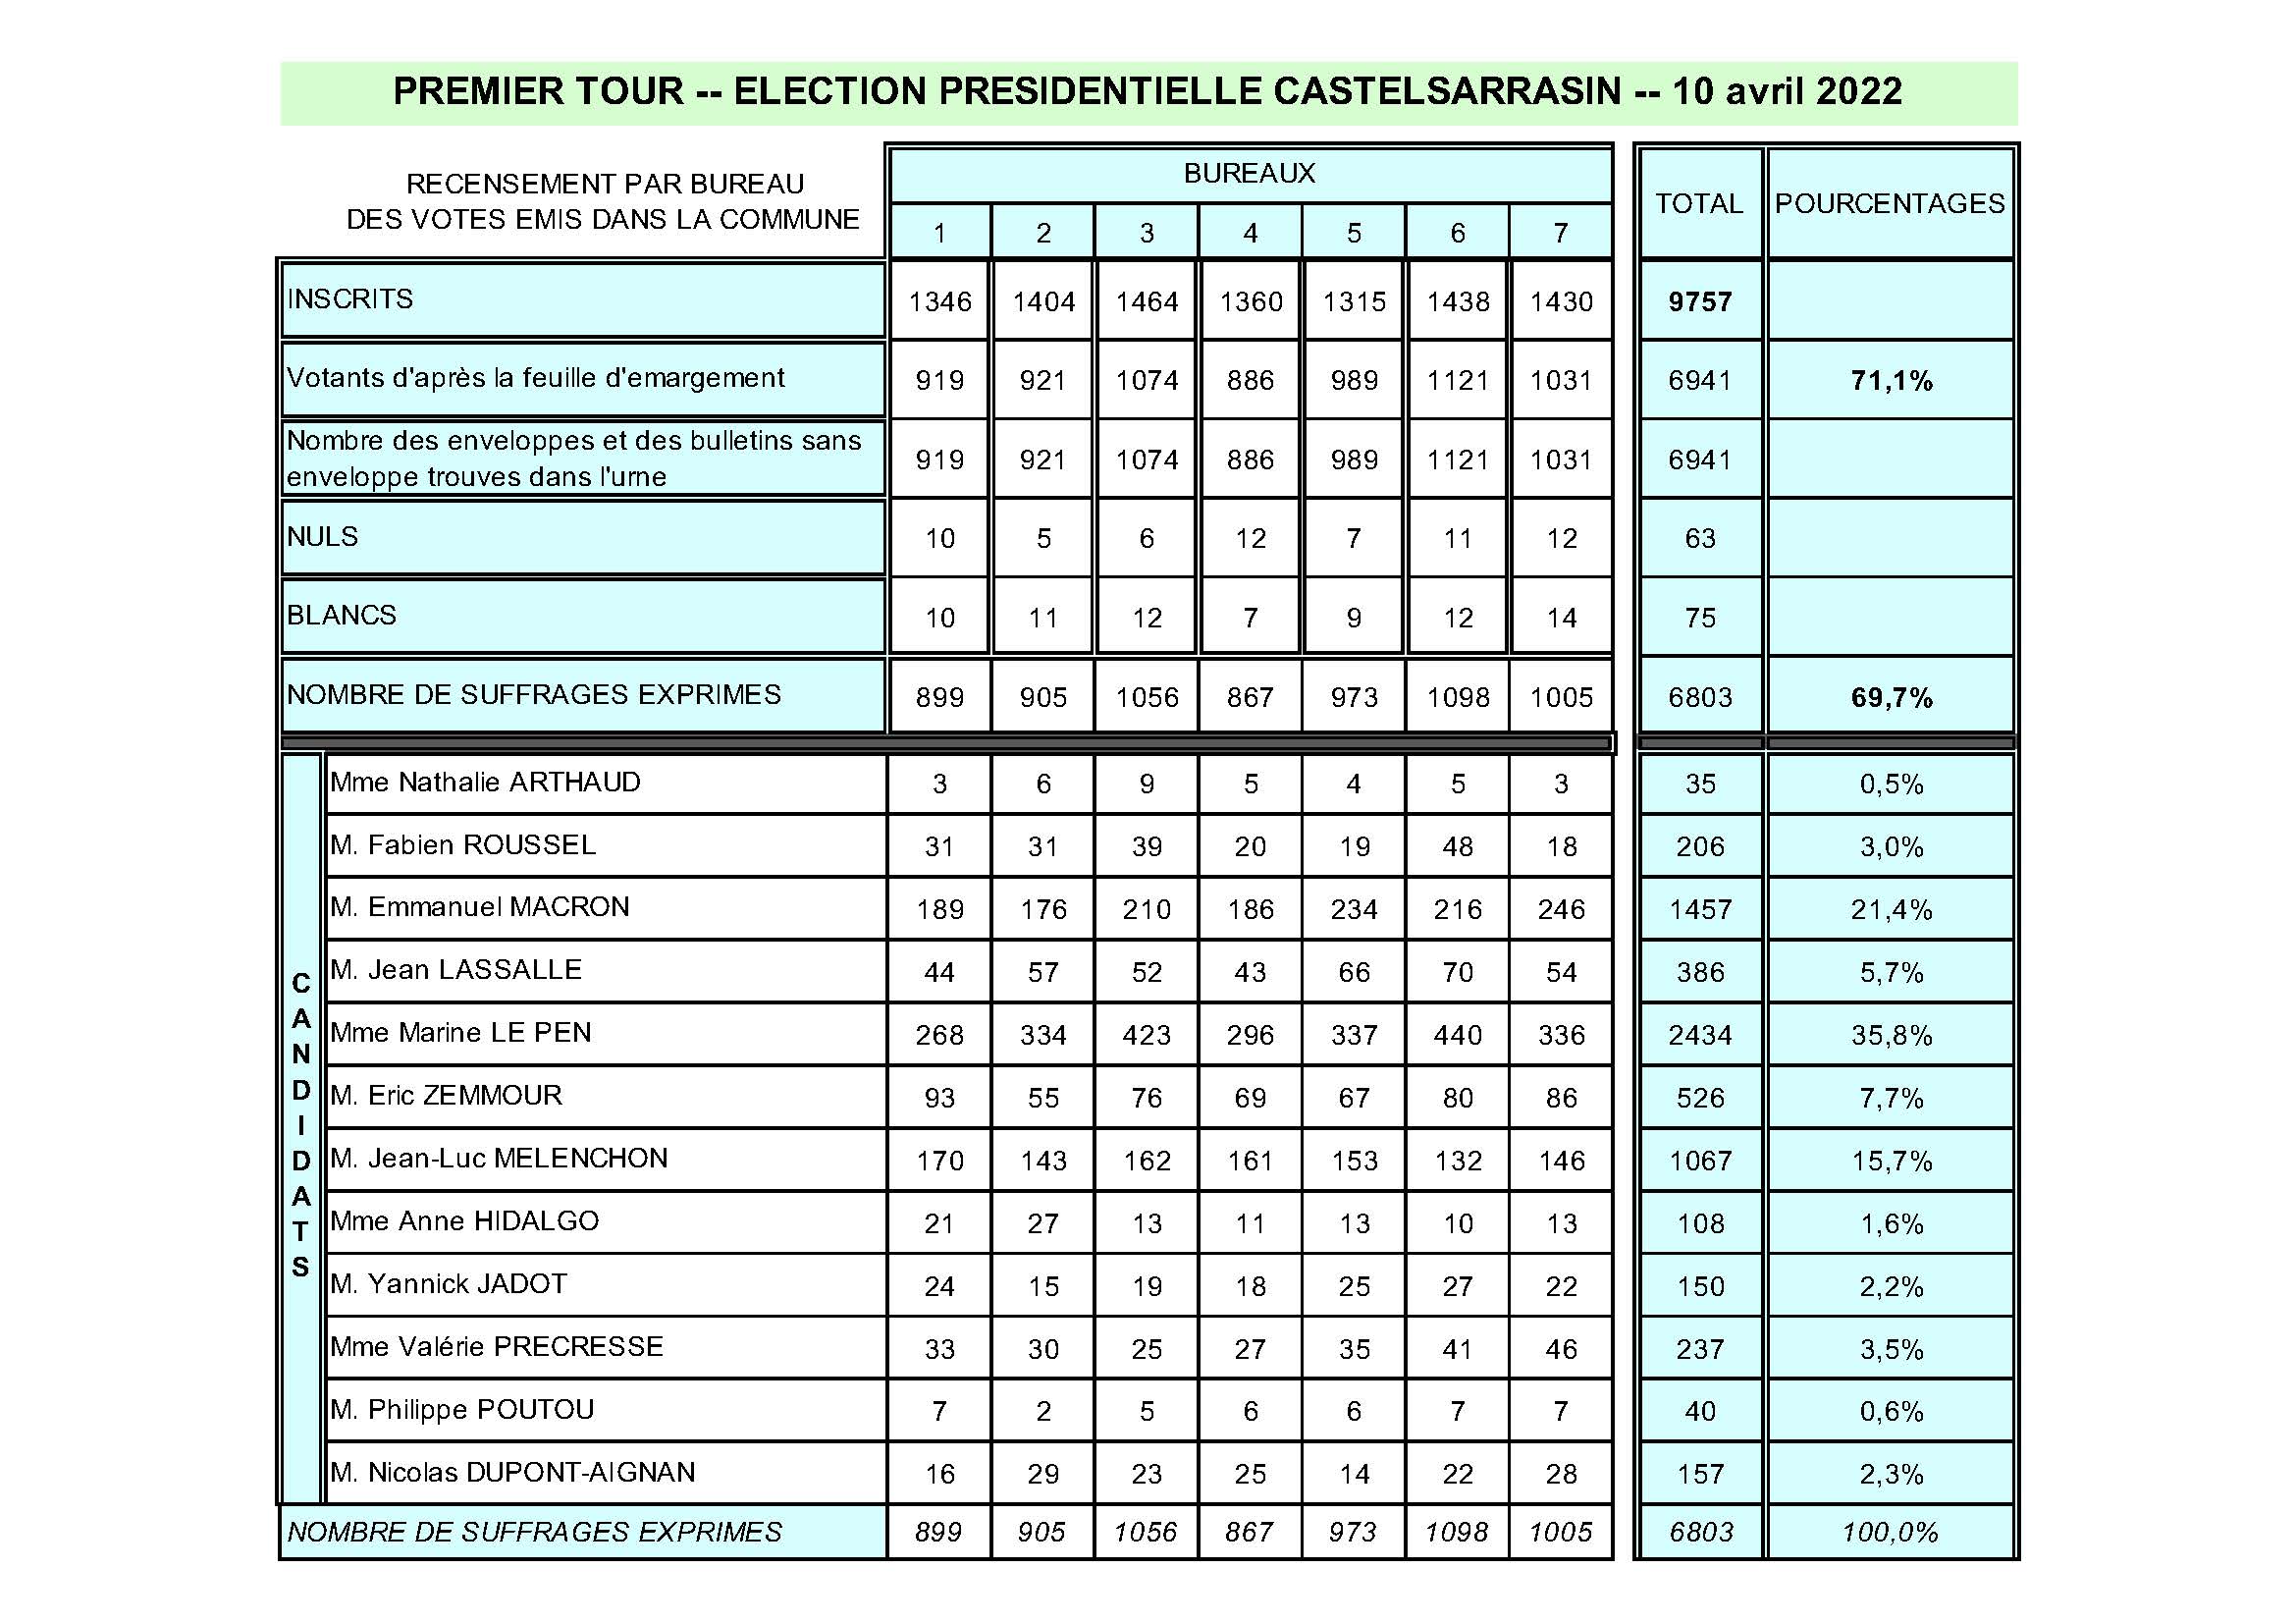 Tableau récapitulatif des résultats par bureau de vote et par candidat pour le premier tour des élections présidentielles de 2022